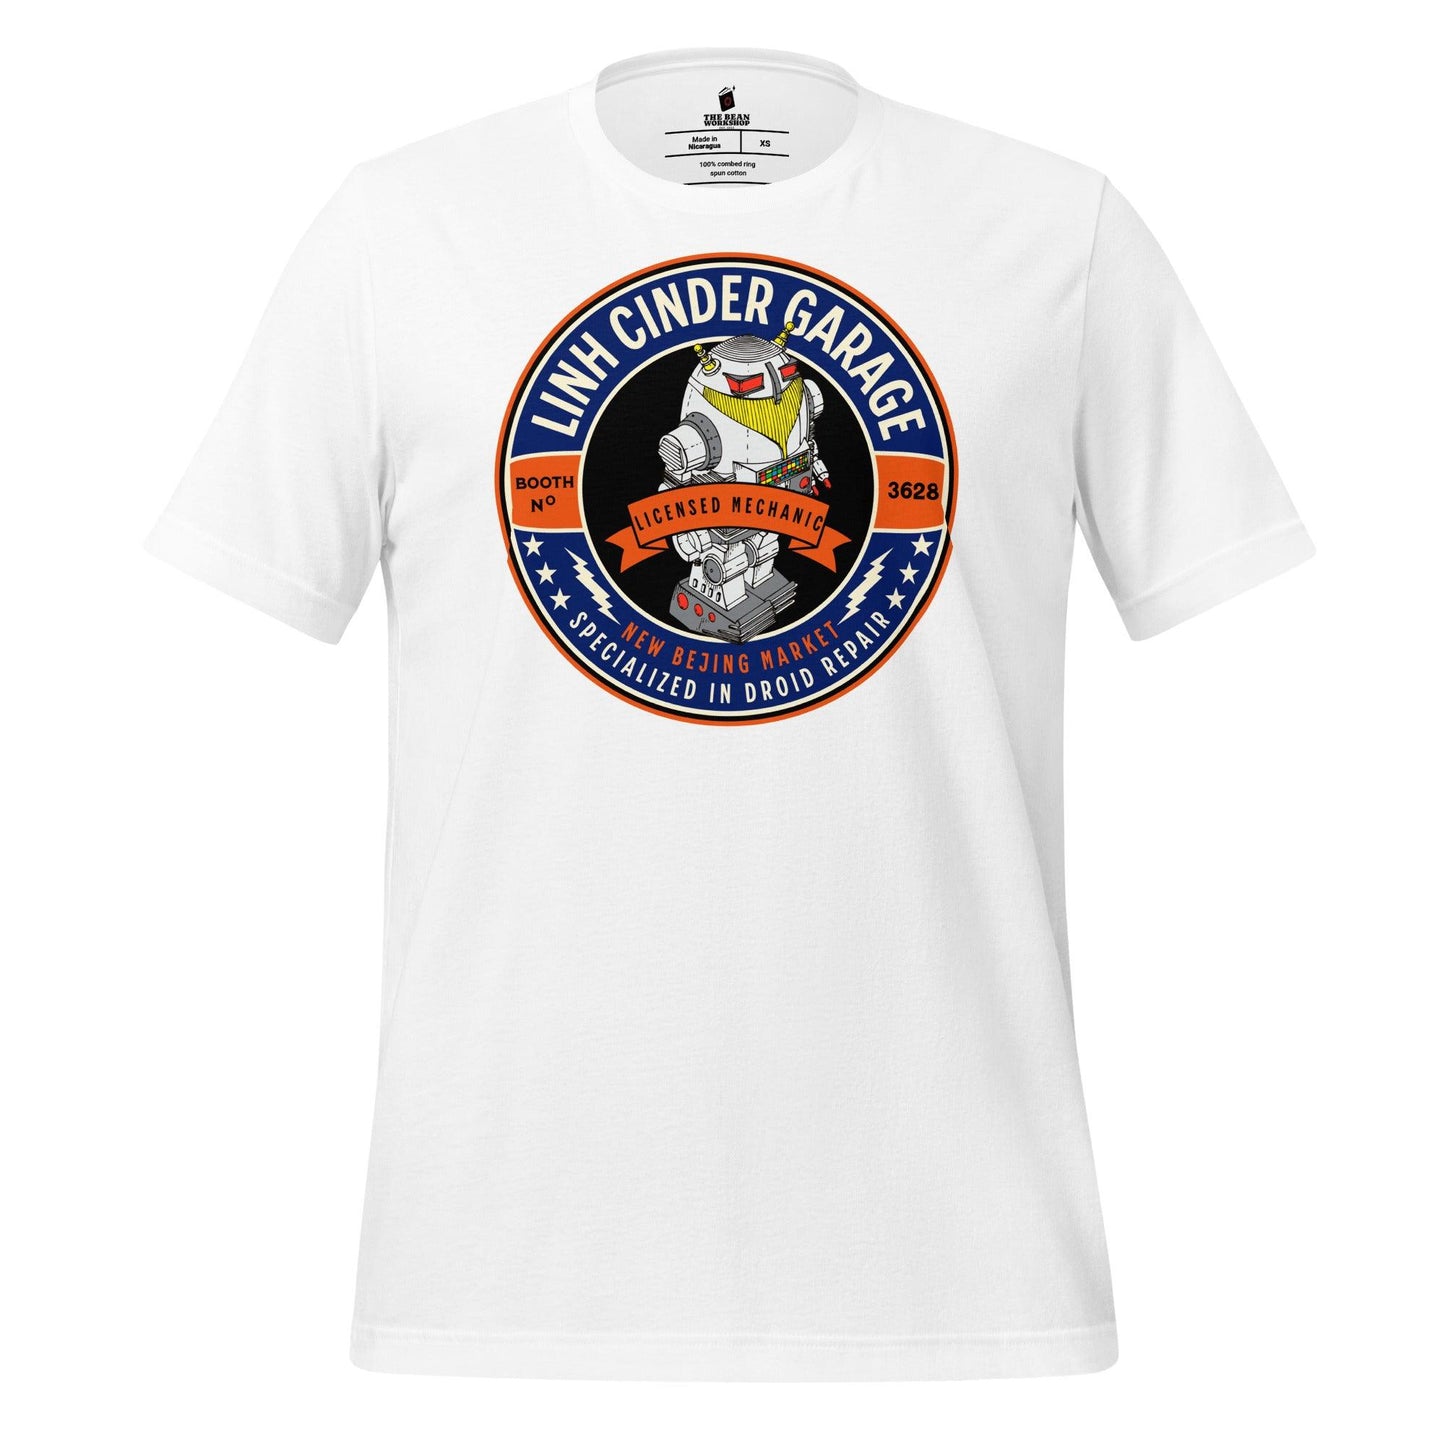 Linh Cinder Garage T-Shirt - The Bean Workshop - marissa meyer, t-shirt, tlc